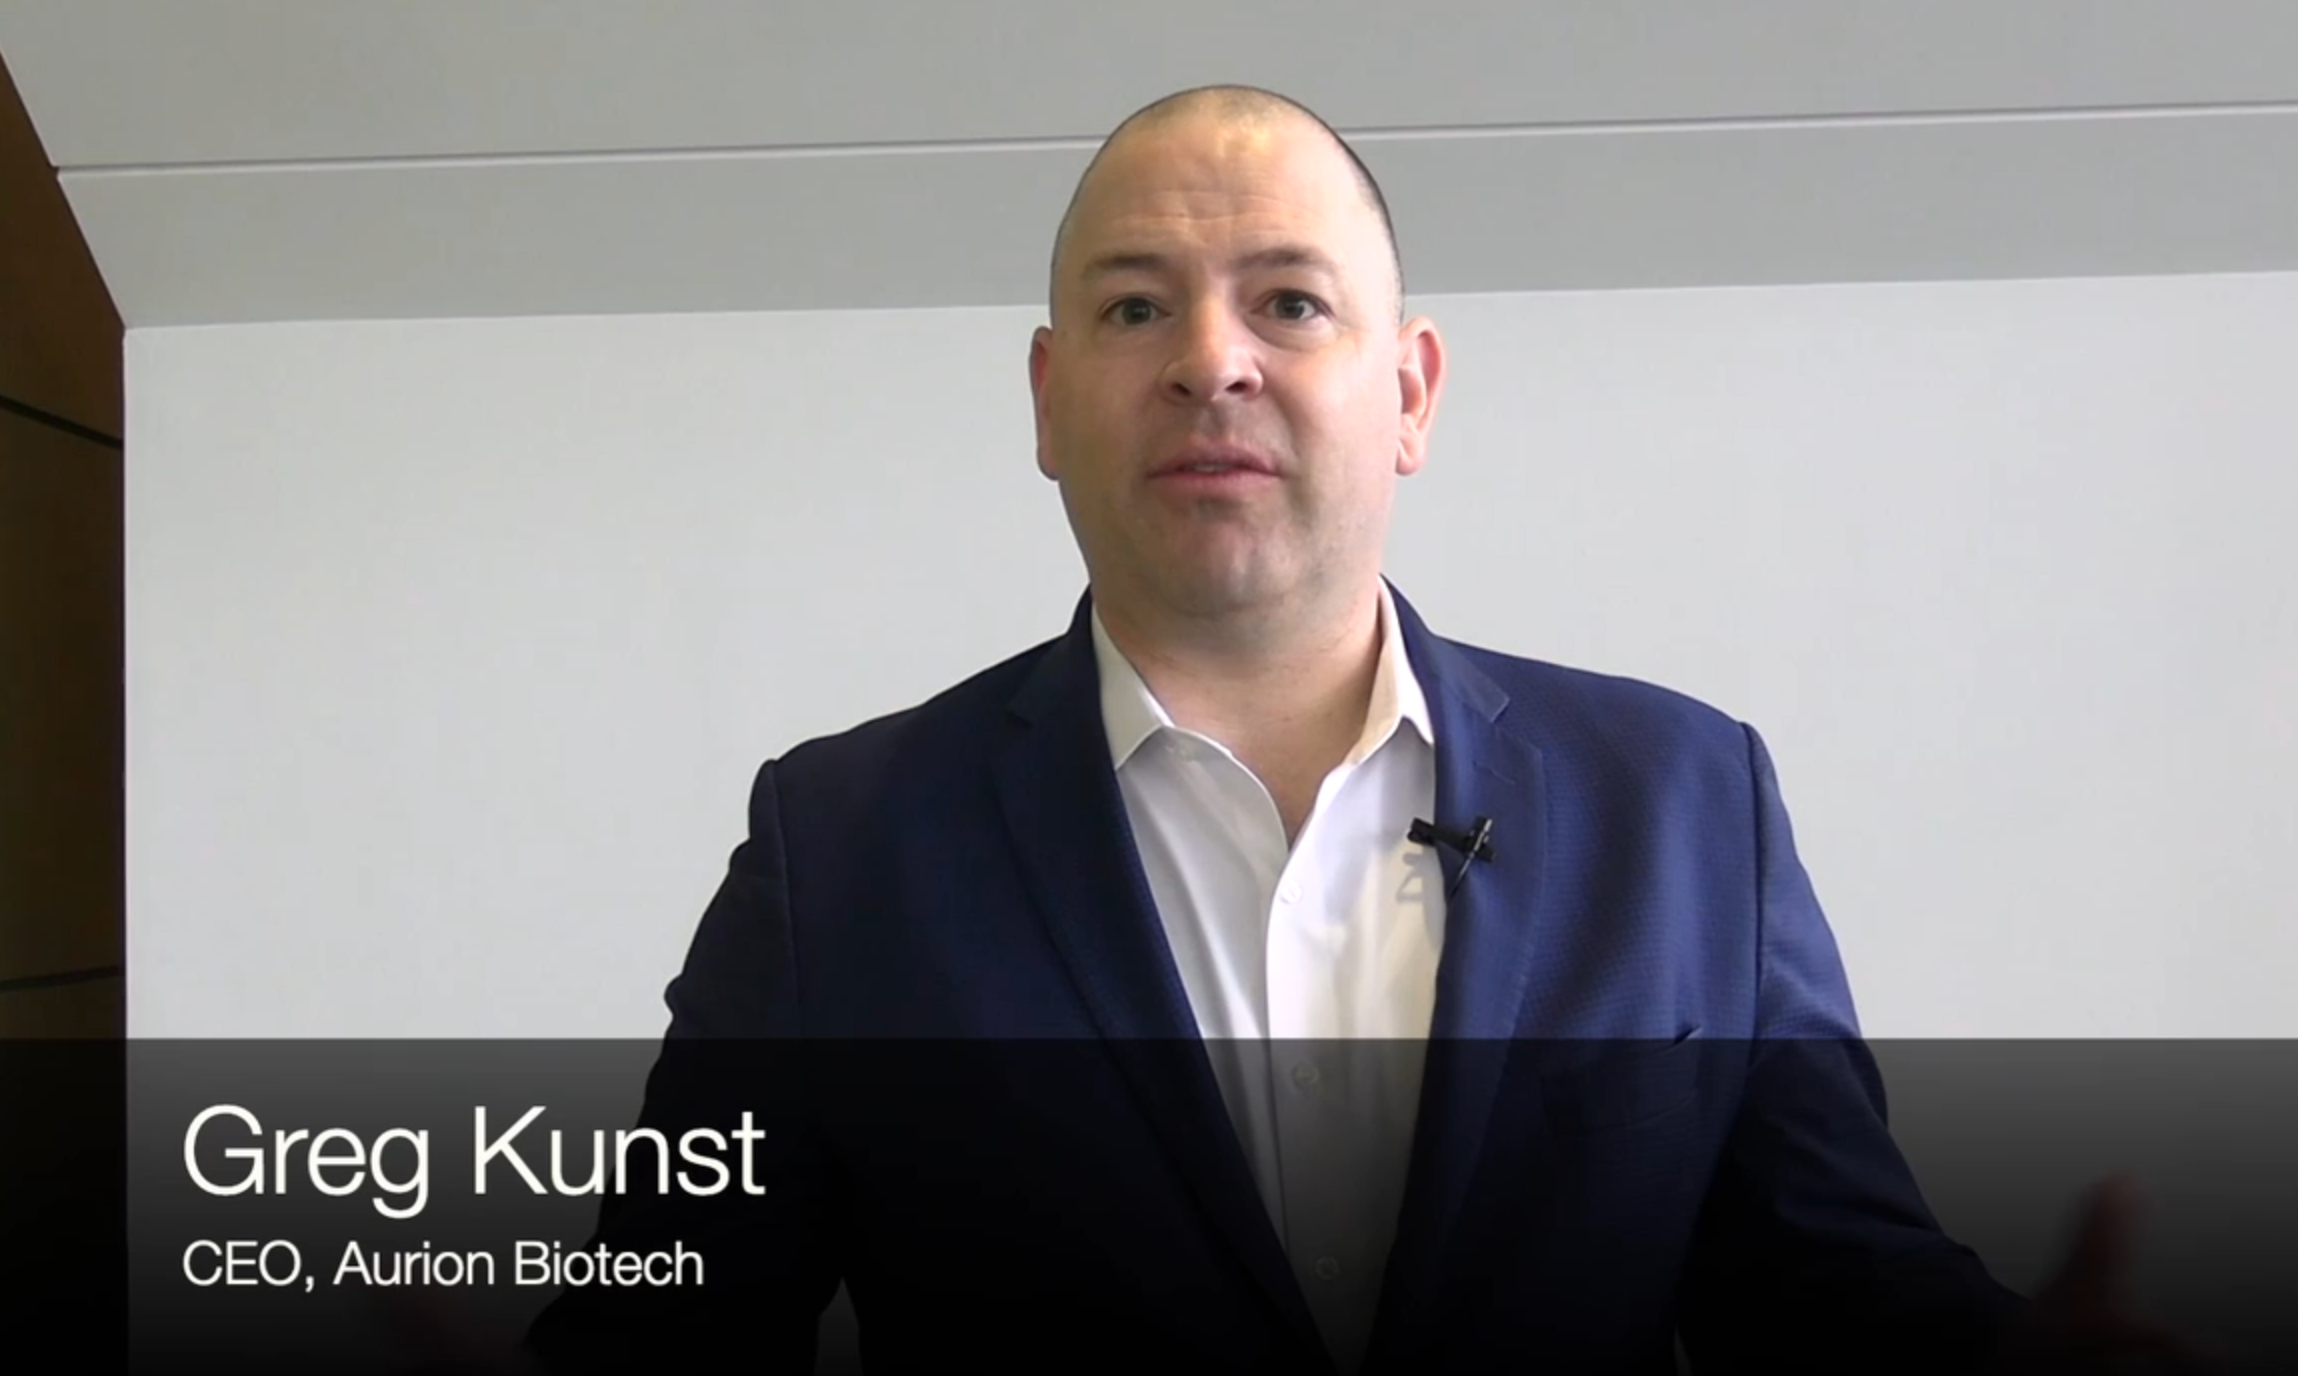 Gret Kunst, CEO of Aurion Biotech